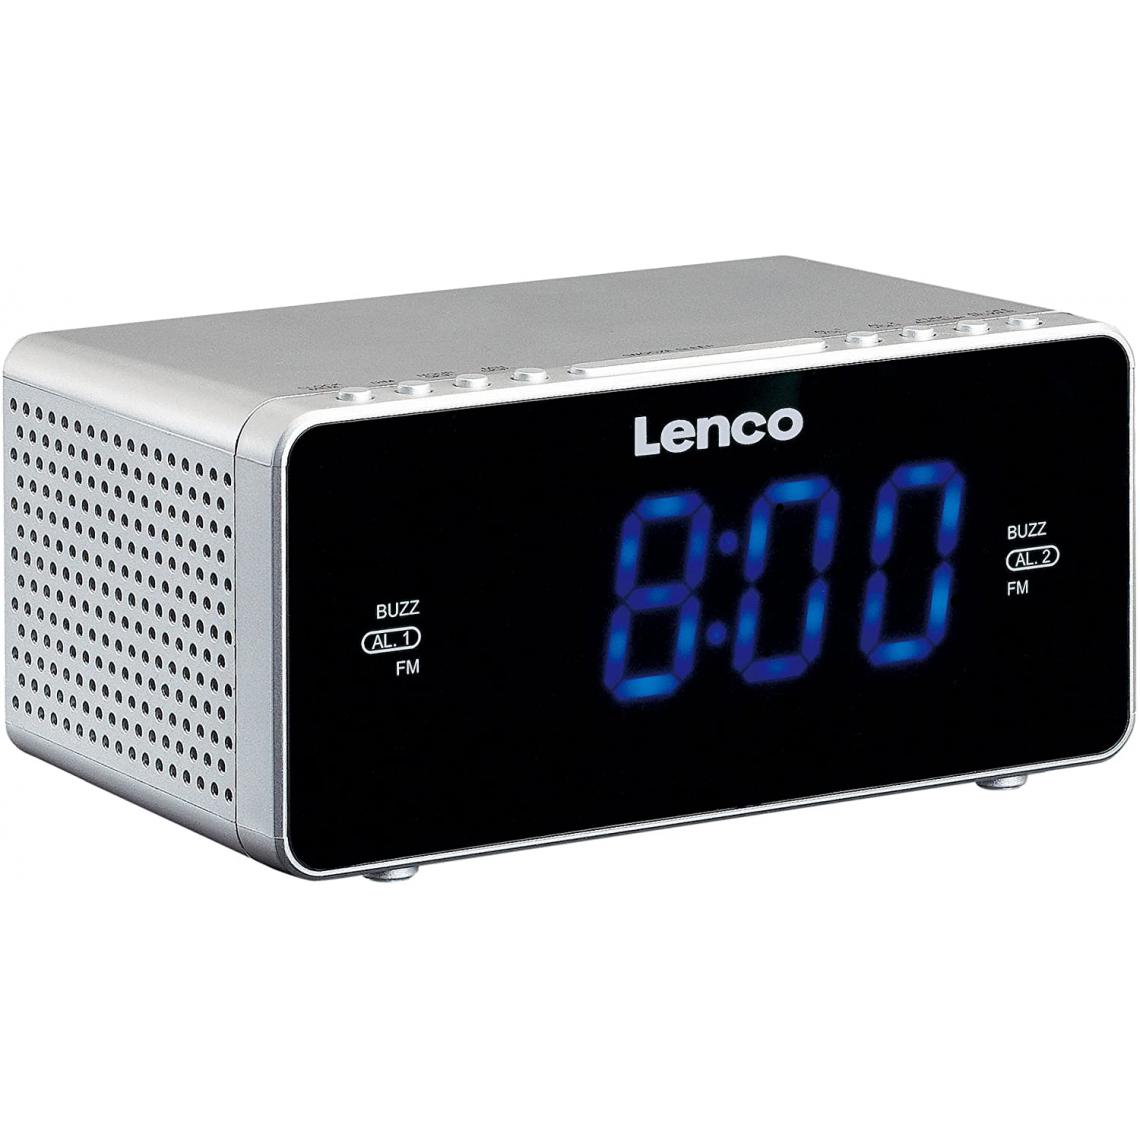 Lenco - radio réveil FM PLL avec double alarme noir blanc - Radio